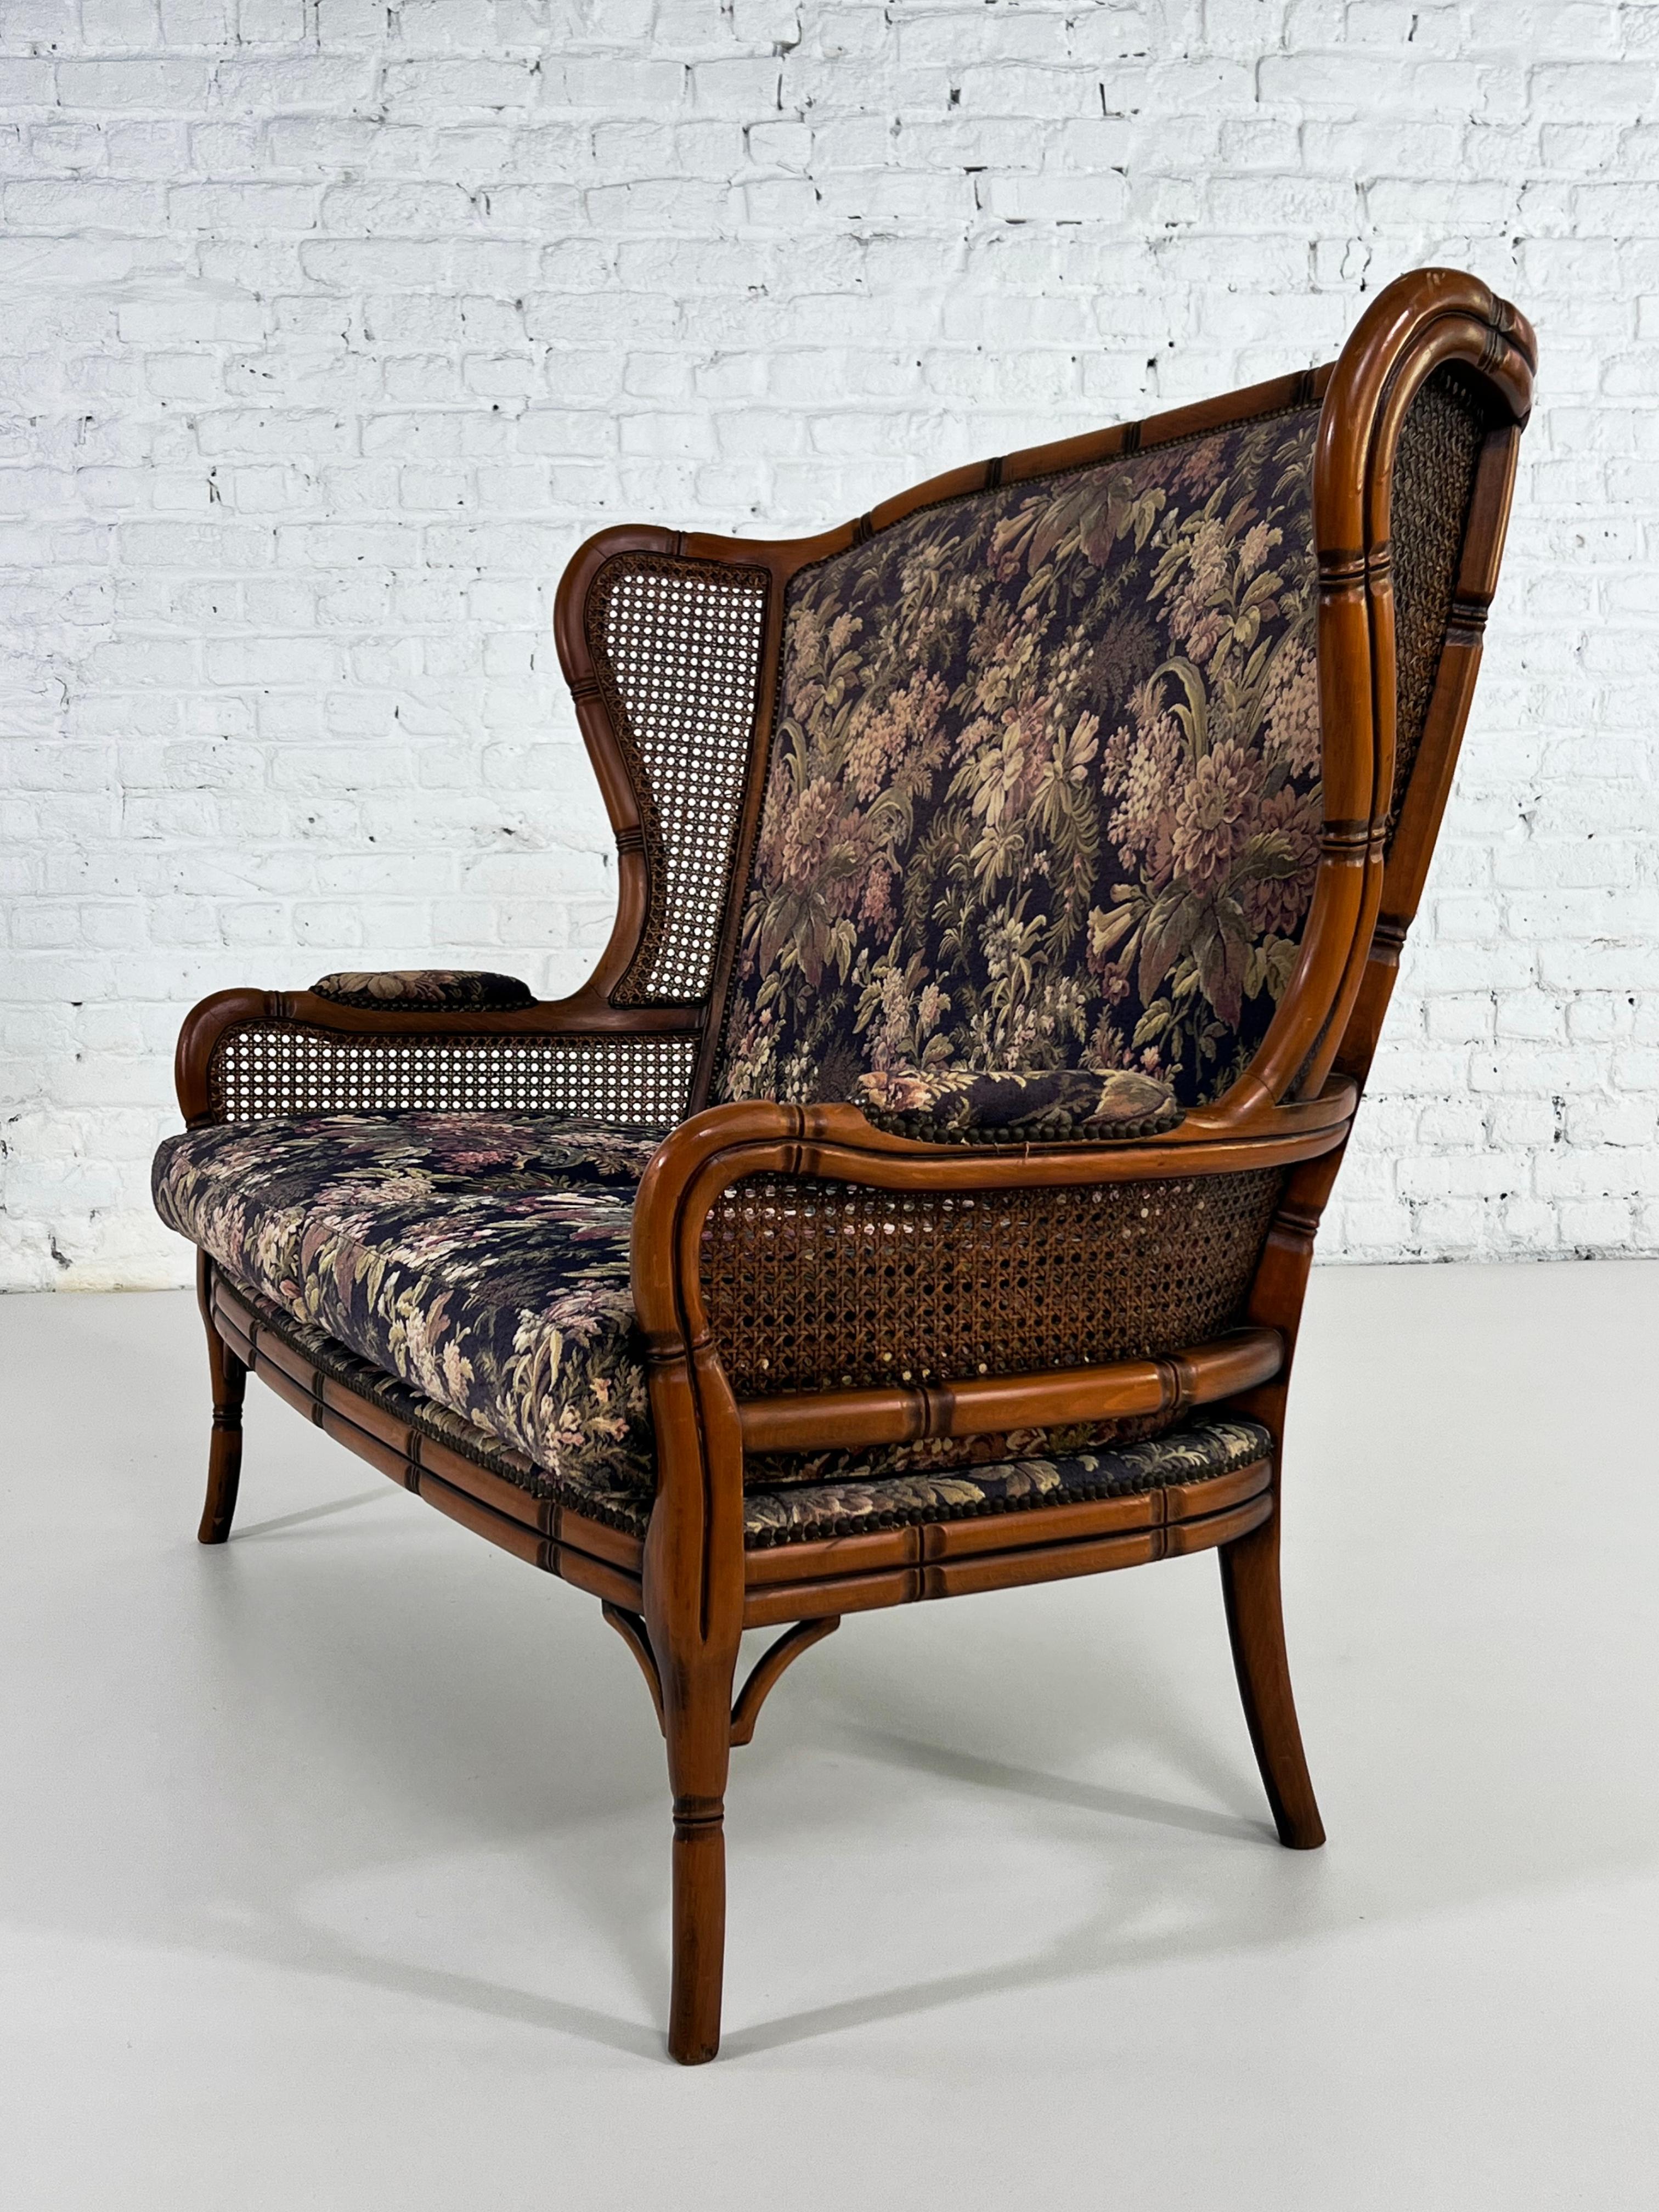 Italienisches Design Zweisitzer-Sofa mit geschnitzten Holzstruktur Bambus-Effekt, Weidenrute Wingback endet mit einem romantischen tiefblauen und farbigen Blumenstoff geschmückt
 